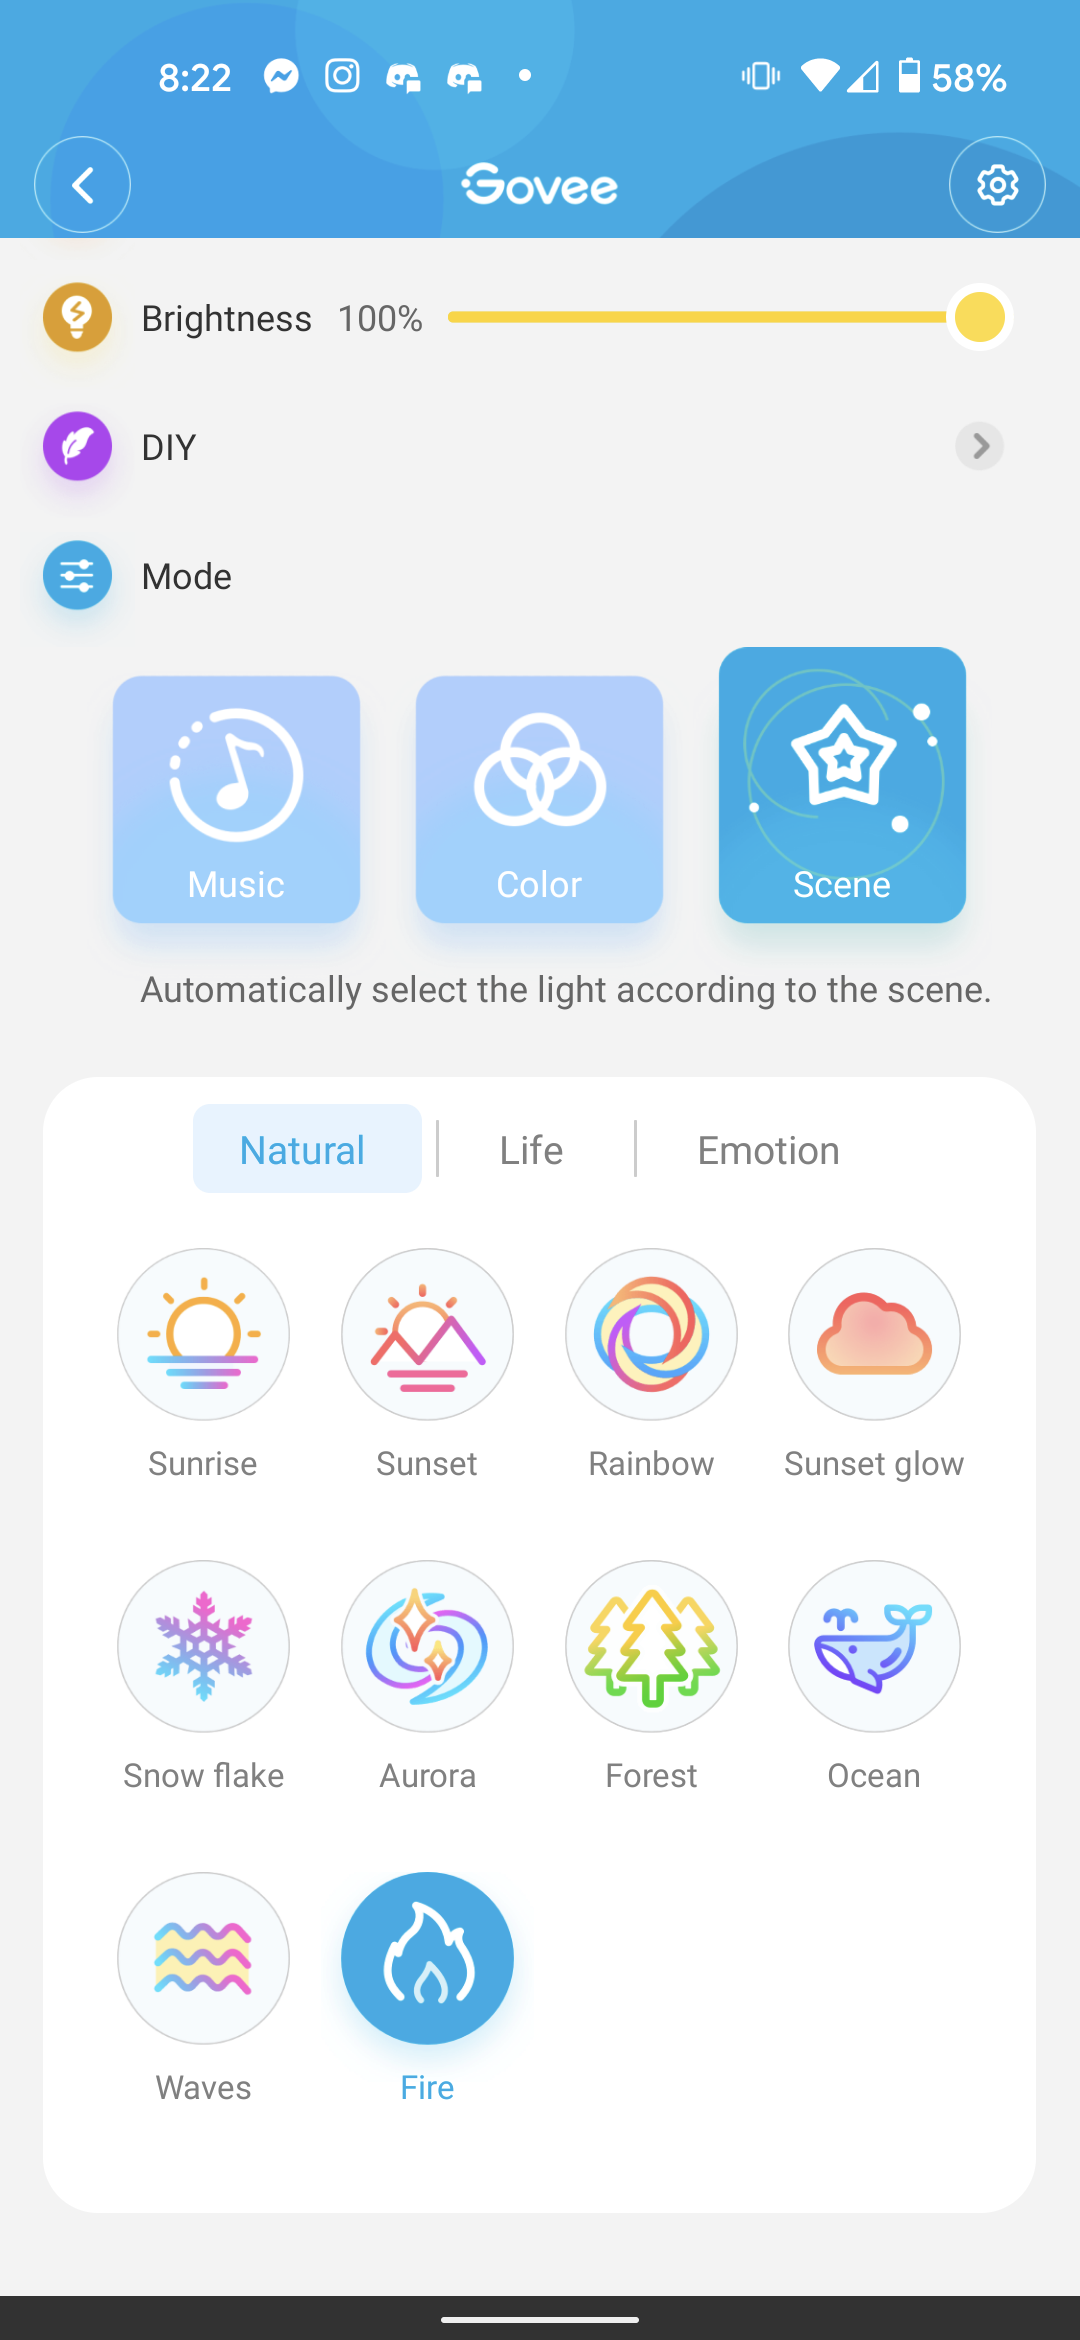 Govee-appen visar scener av Aura Lamp